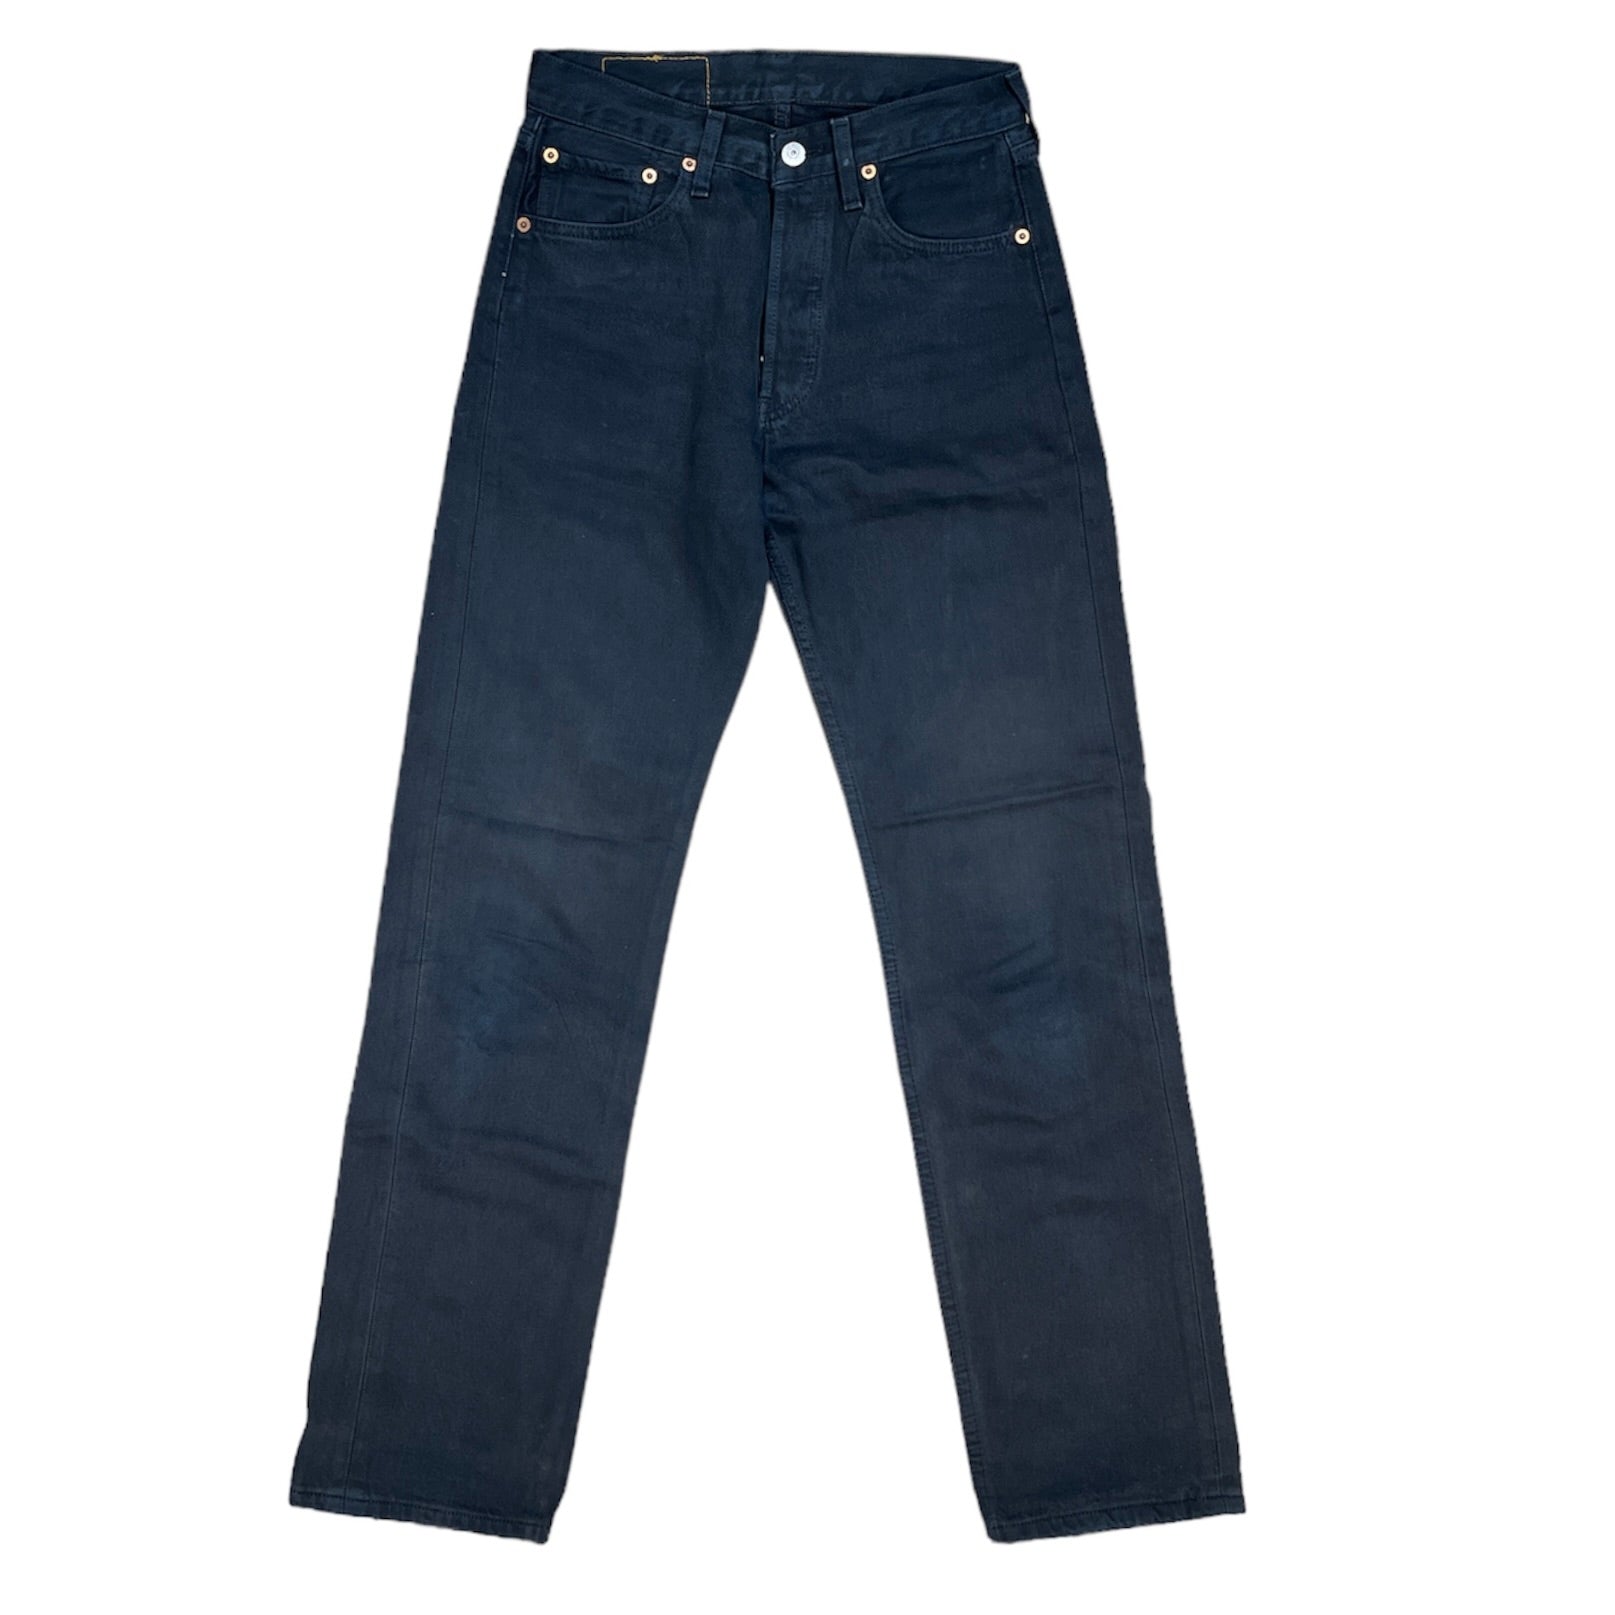 Vintage Levis 501 Black Jeans (W28/L32)